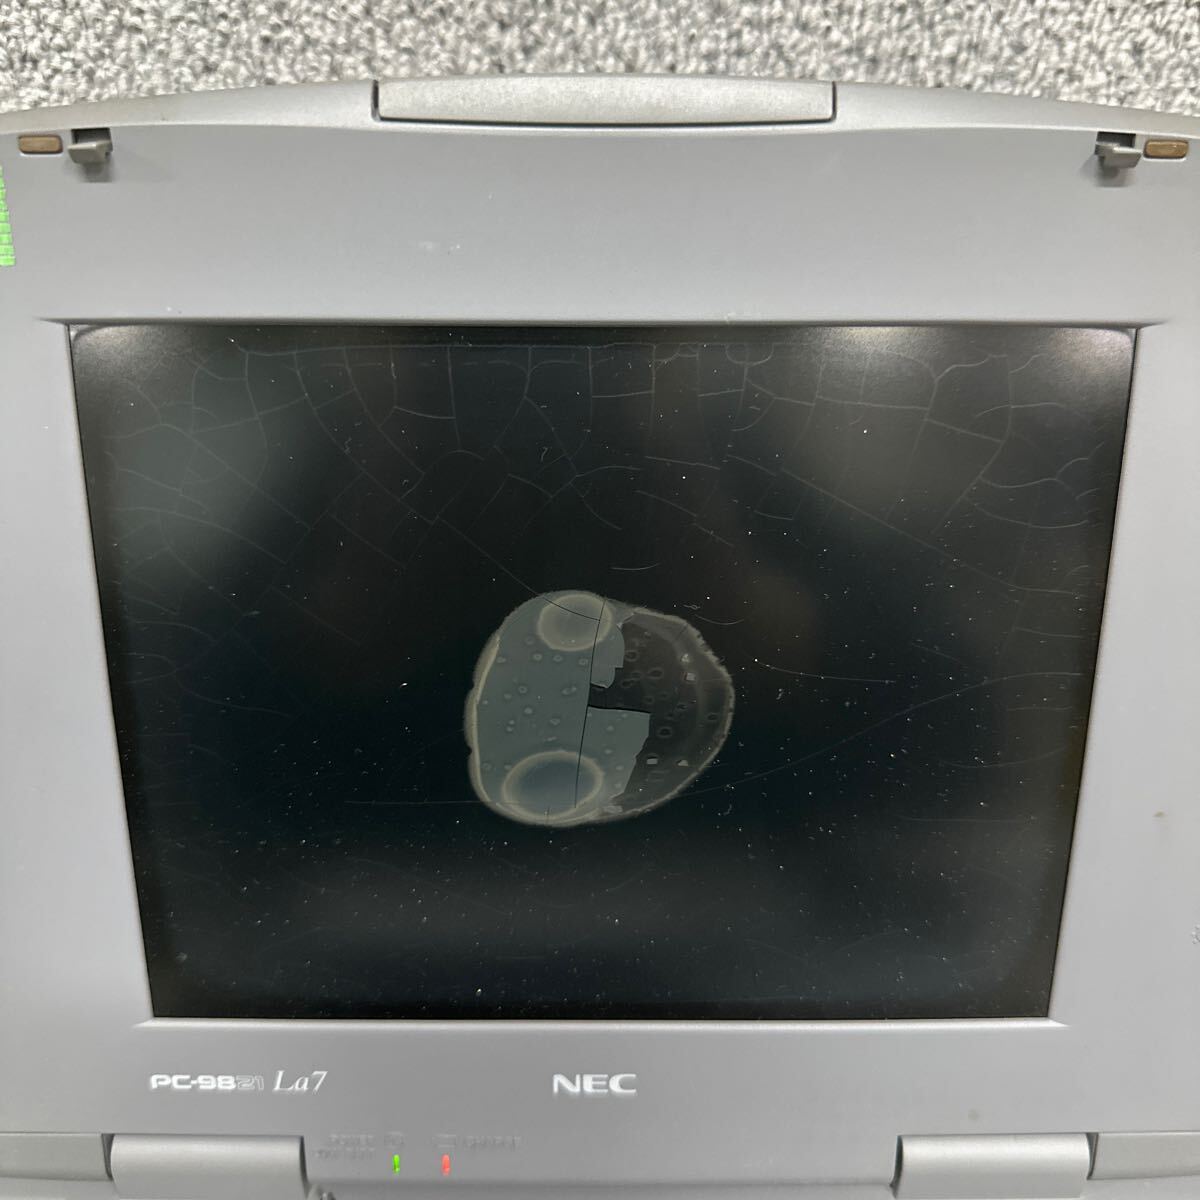 PCN98-1564 激安 PC98 ノートブック NEC Aile PC-9821La7/D5 起動音ランプ確認済み ジャンク 同梱可能の画像2